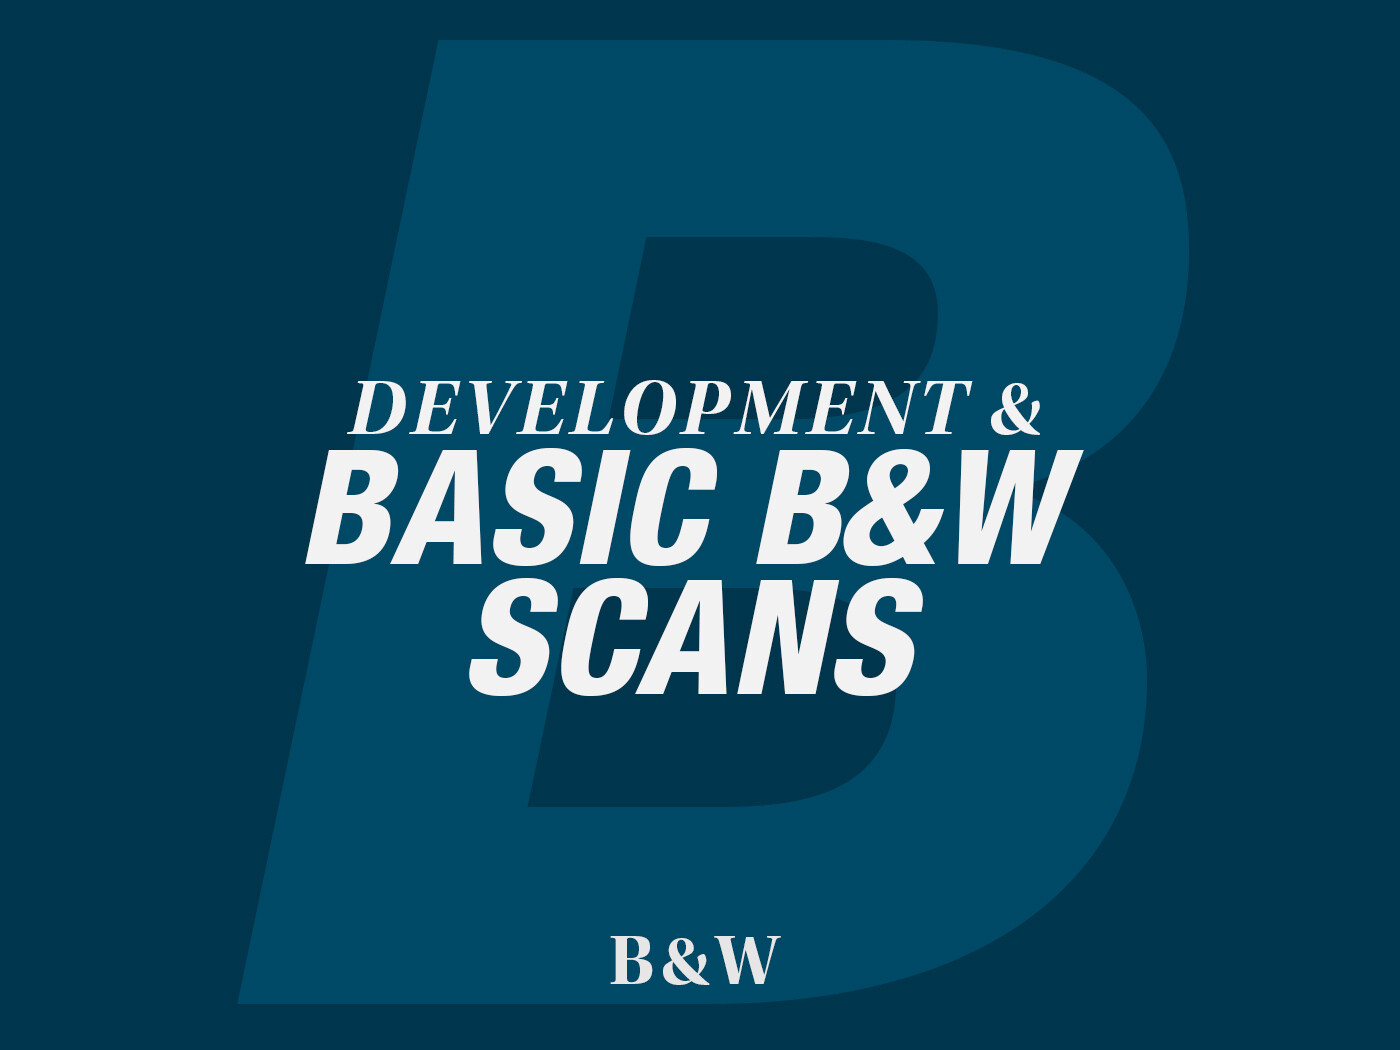 Basic B&W Scans